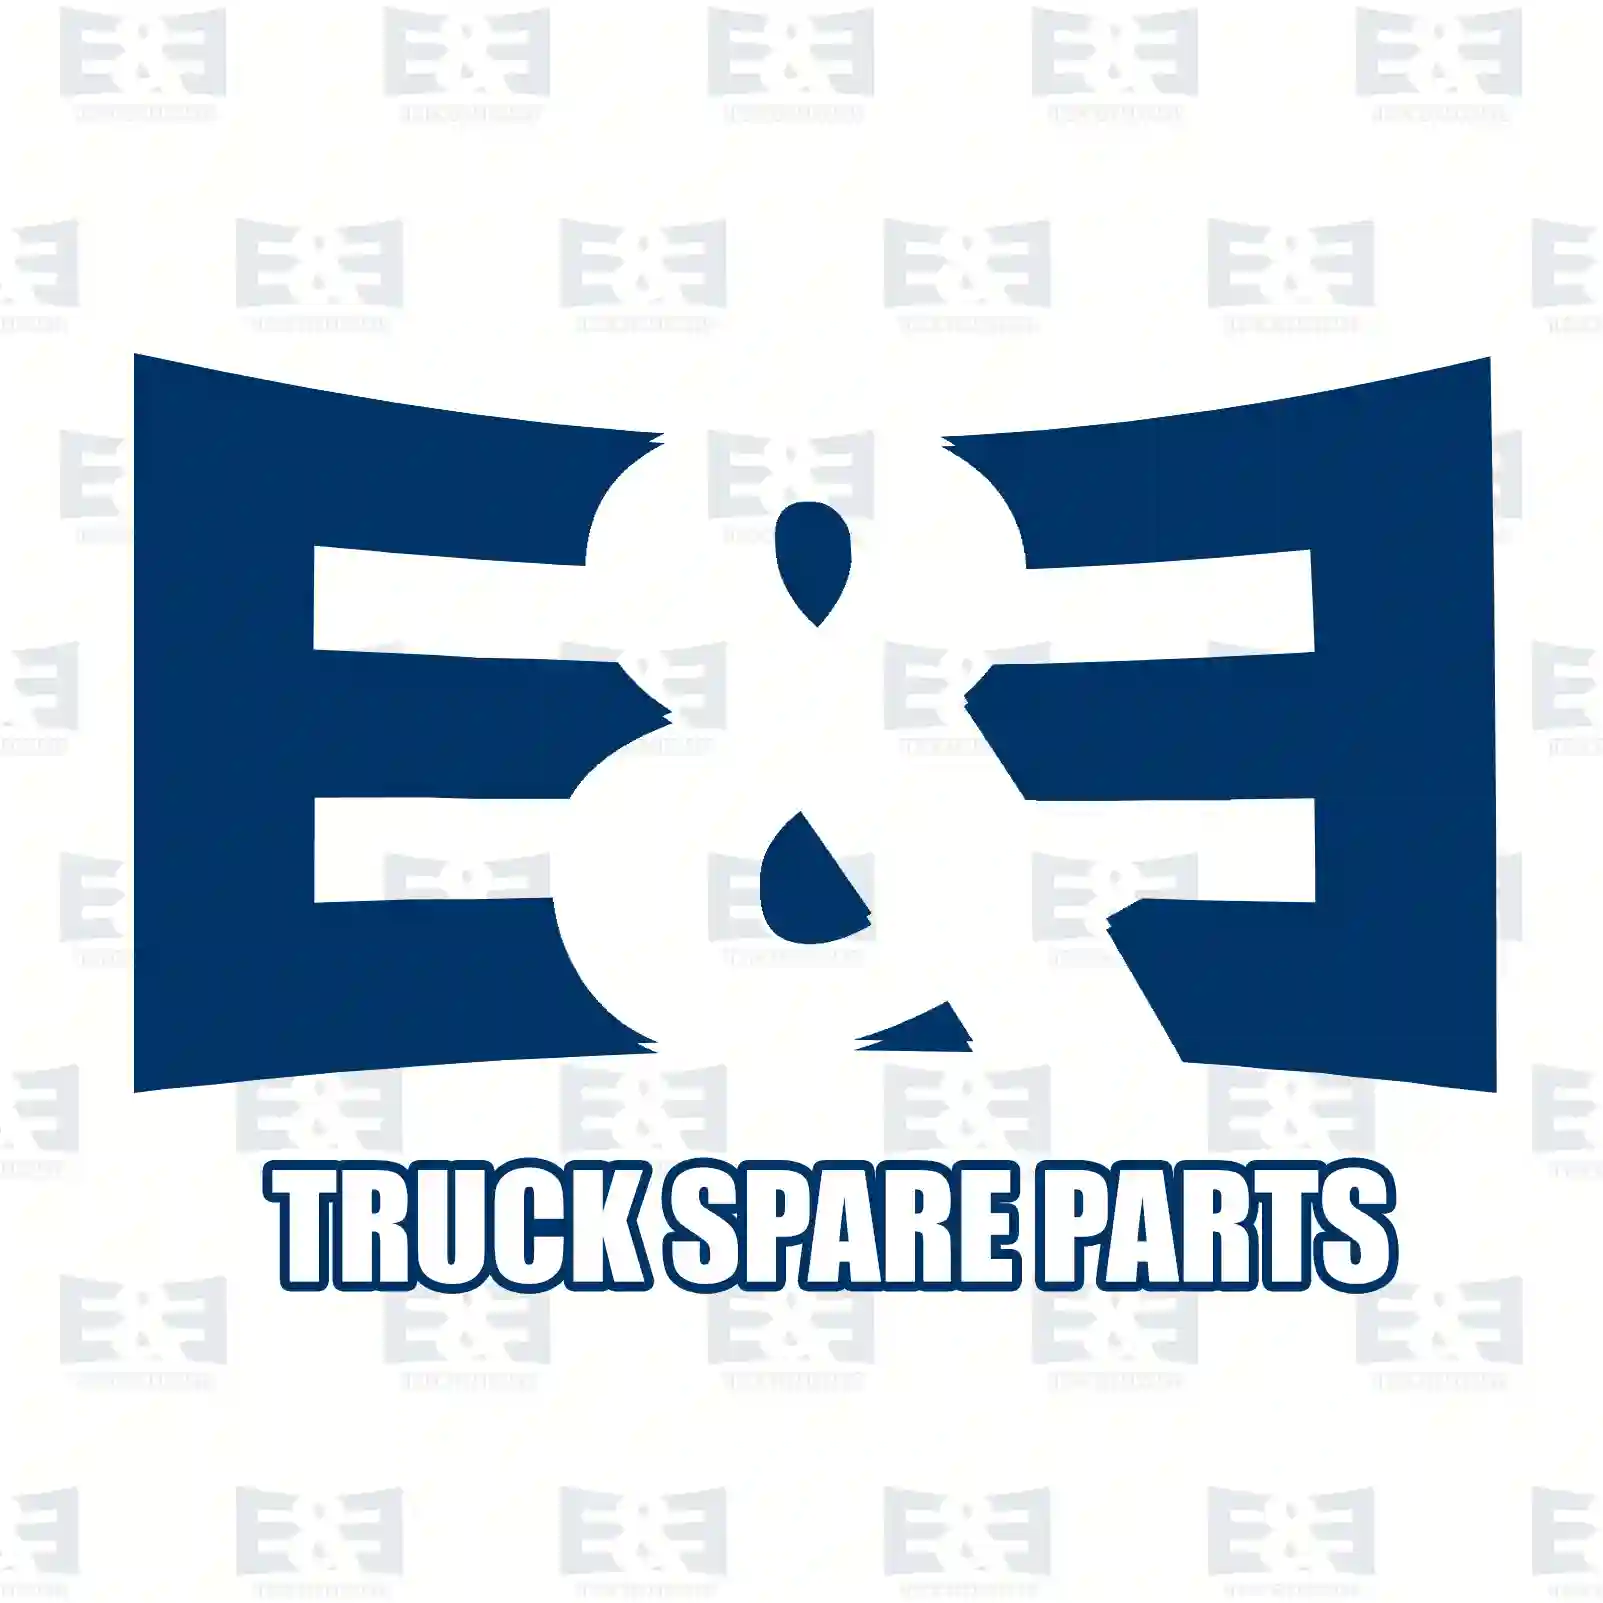 Brake disc, 2E2296208, 1456667, 1473008, 1520371, 1568654, 1658654, 1738807, 1C1J-1125-A2D, 1C1W-1125-AA, 1C1W-1125-AB, 4041427, 4395257 ||  2E2296208 E&E Truck Spare Parts | Truck Spare Parts, Auotomotive Spare Parts Brake disc, 2E2296208, 1456667, 1473008, 1520371, 1568654, 1658654, 1738807, 1C1J-1125-A2D, 1C1W-1125-AA, 1C1W-1125-AB, 4041427, 4395257 ||  2E2296208 E&E Truck Spare Parts | Truck Spare Parts, Auotomotive Spare Parts